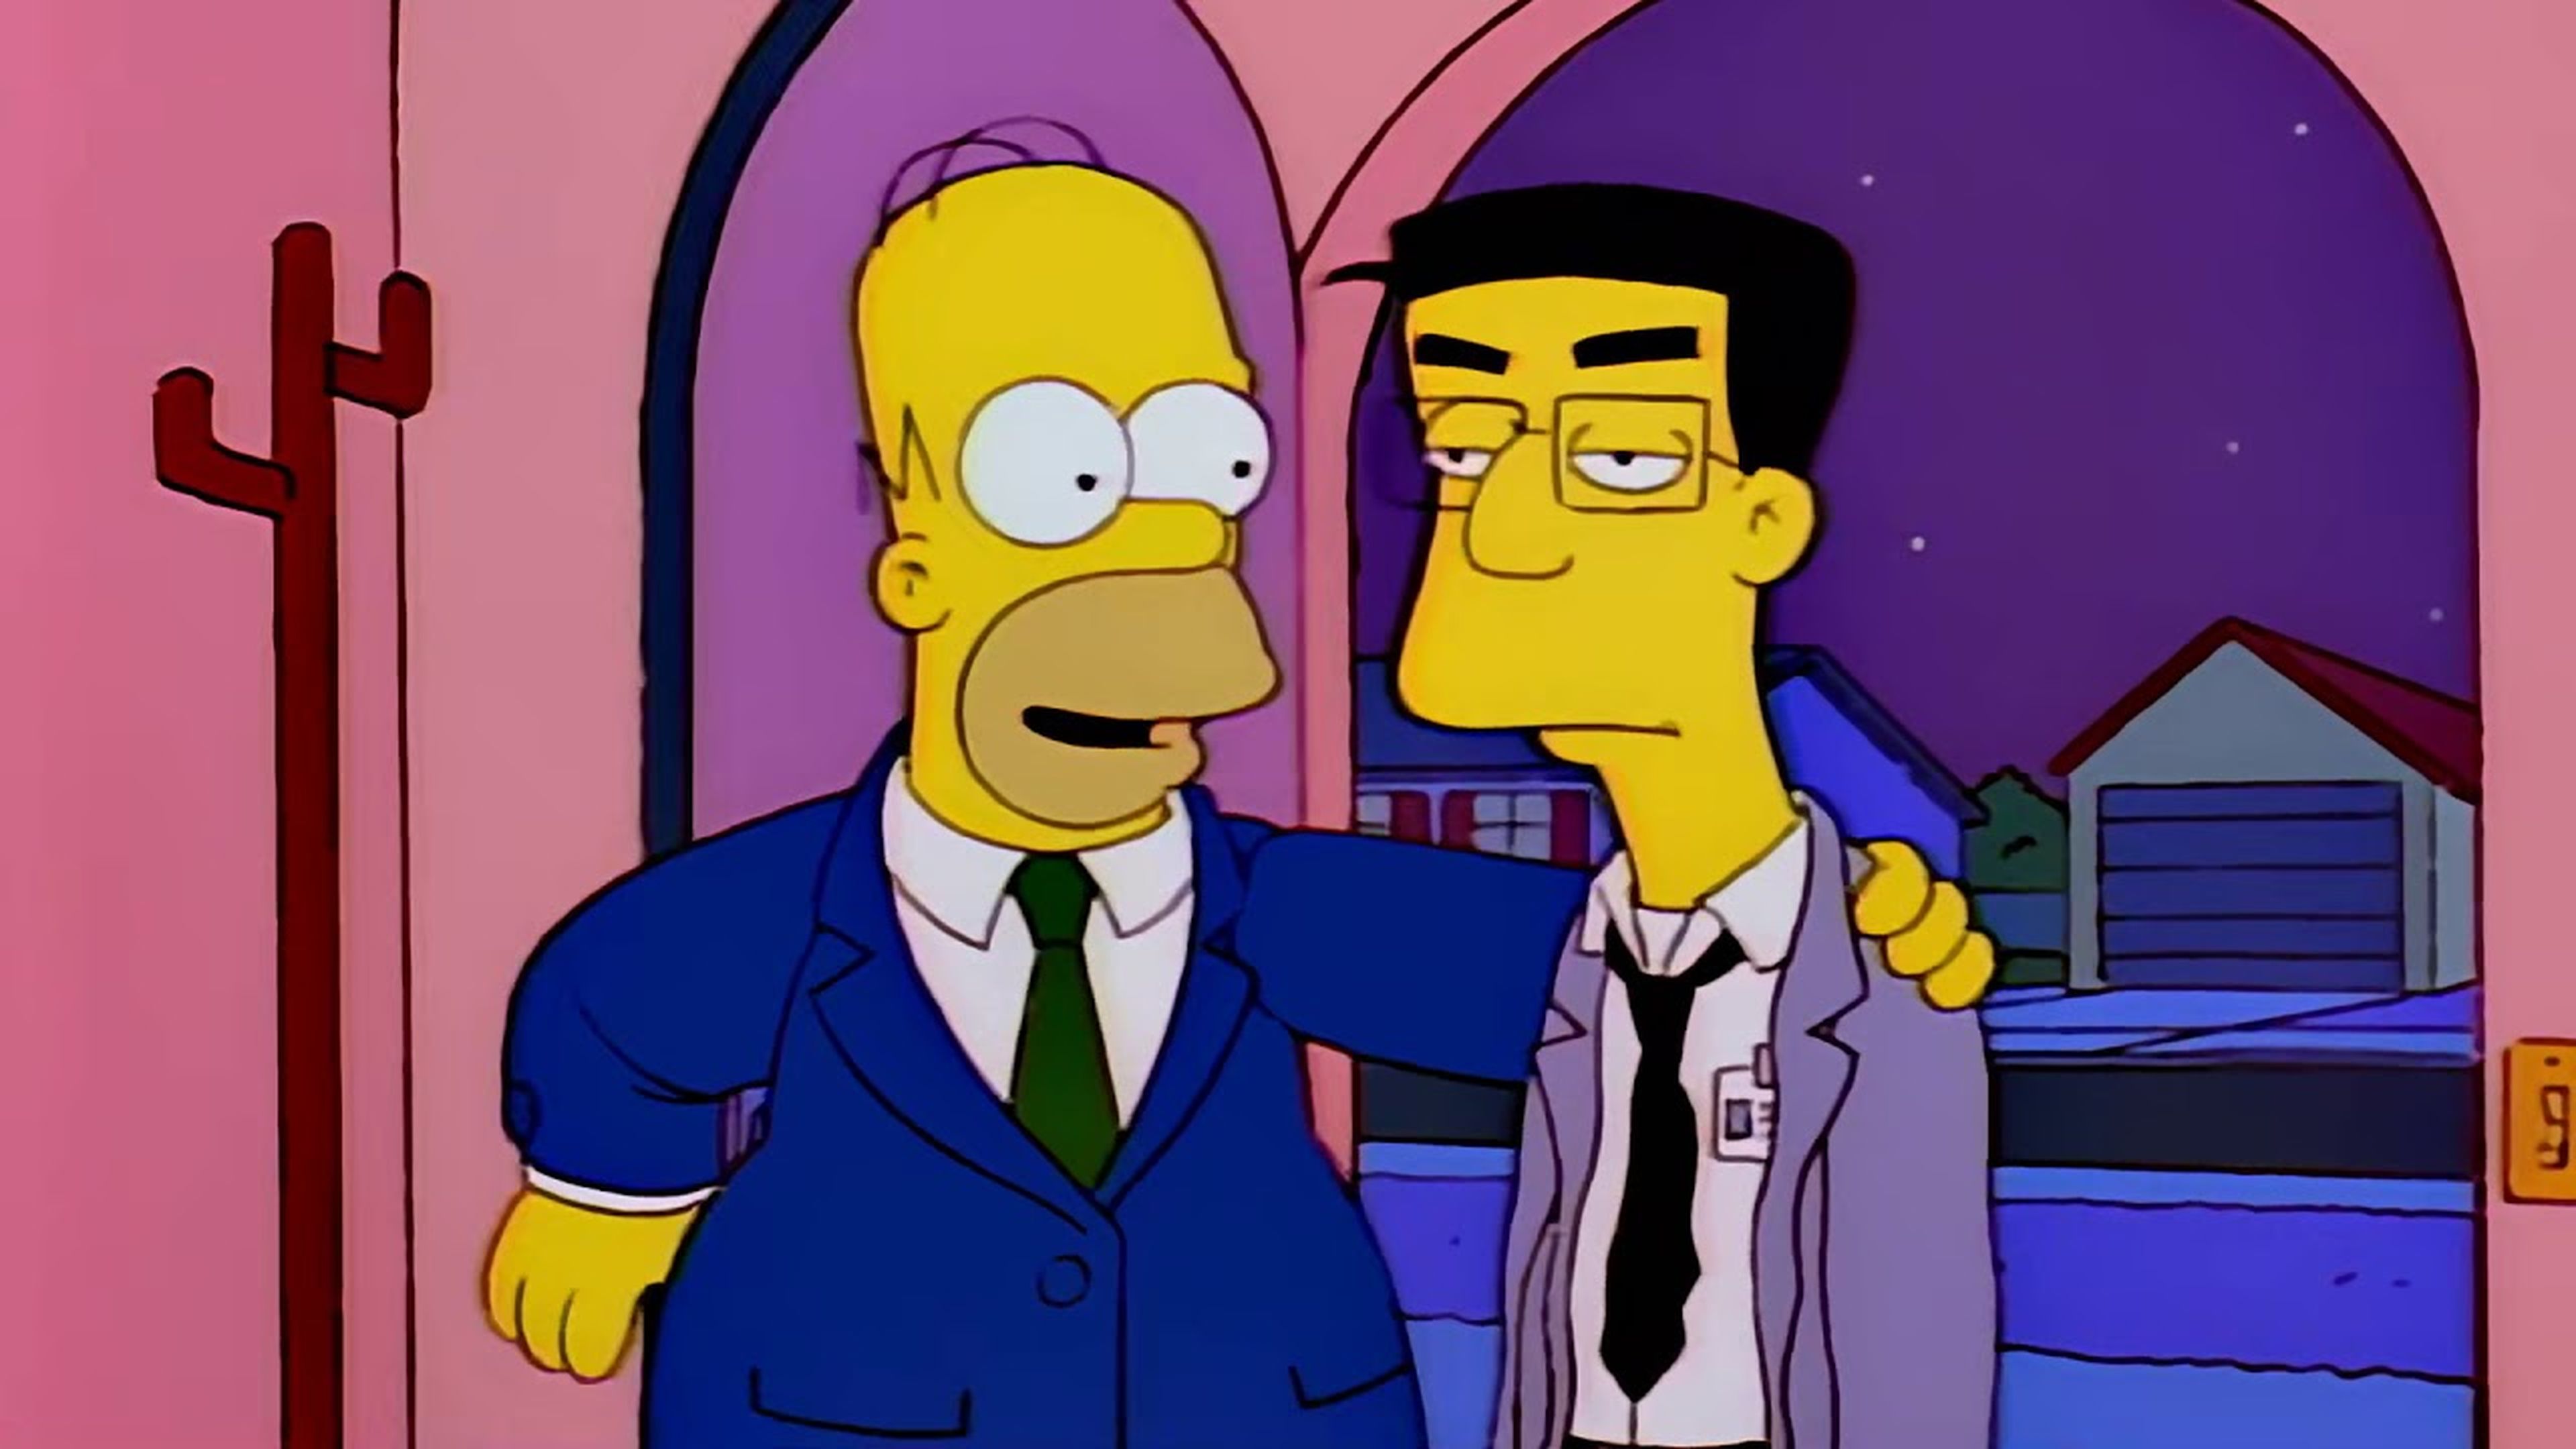 Los Simpson - El enemigo de Homer